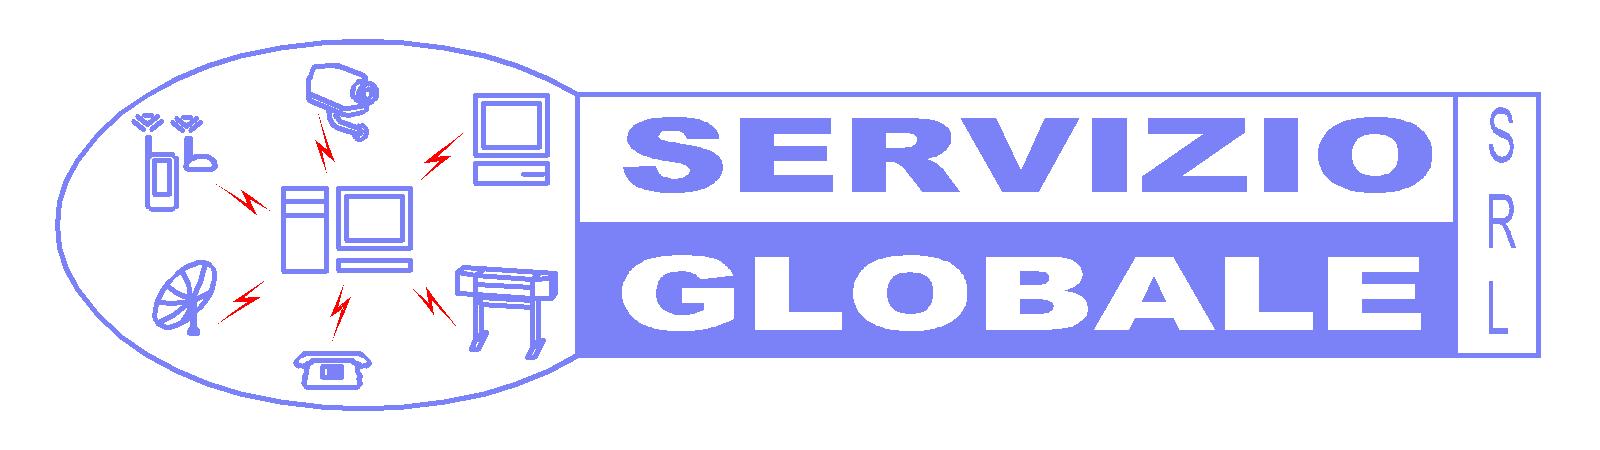 Servizio globale